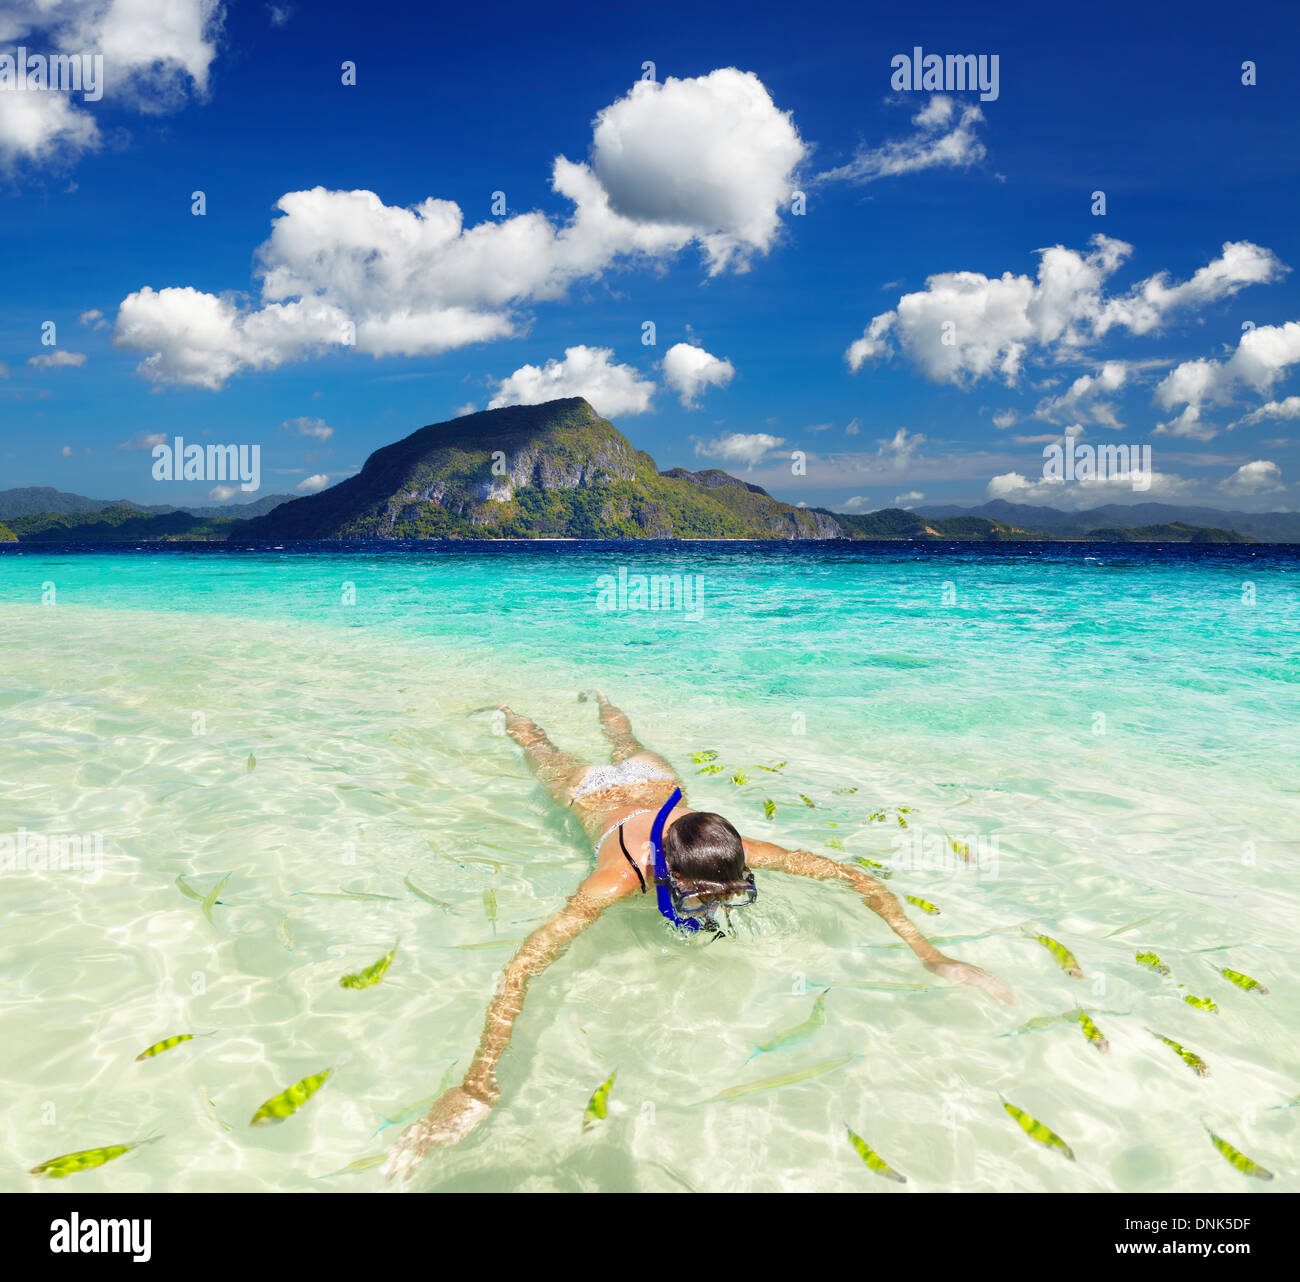 Tropical beach, femme de natation avec tuba Banque D'Images